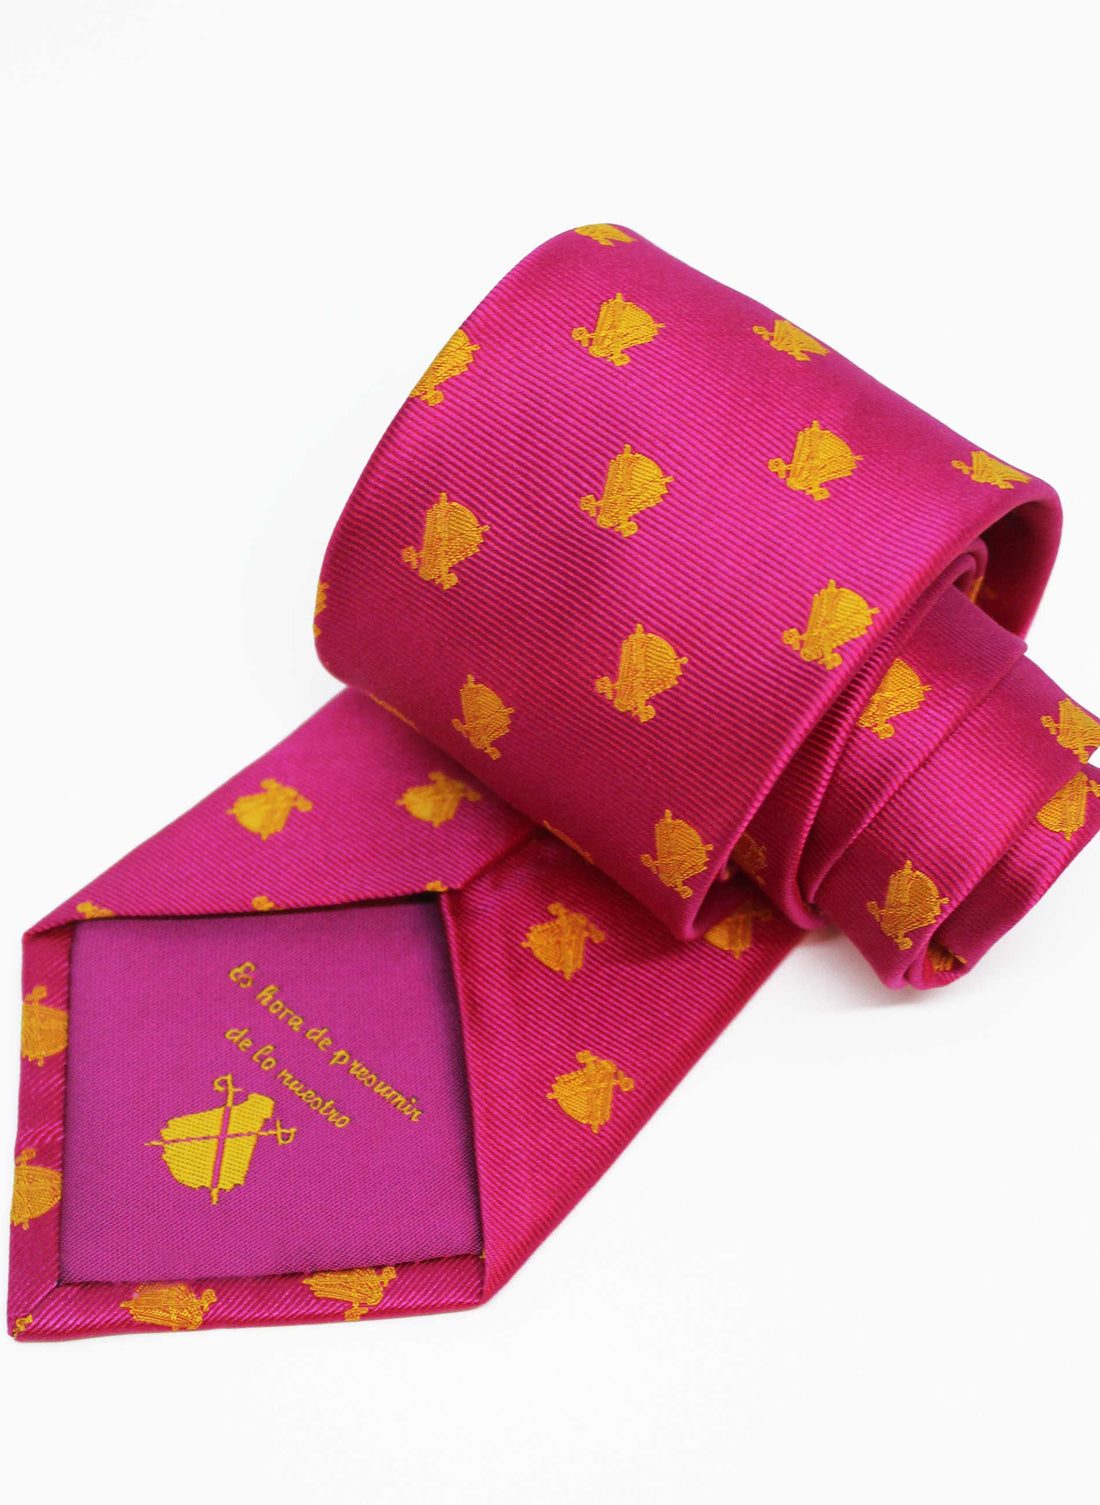 Cravate cape rose avec logos jaunes 